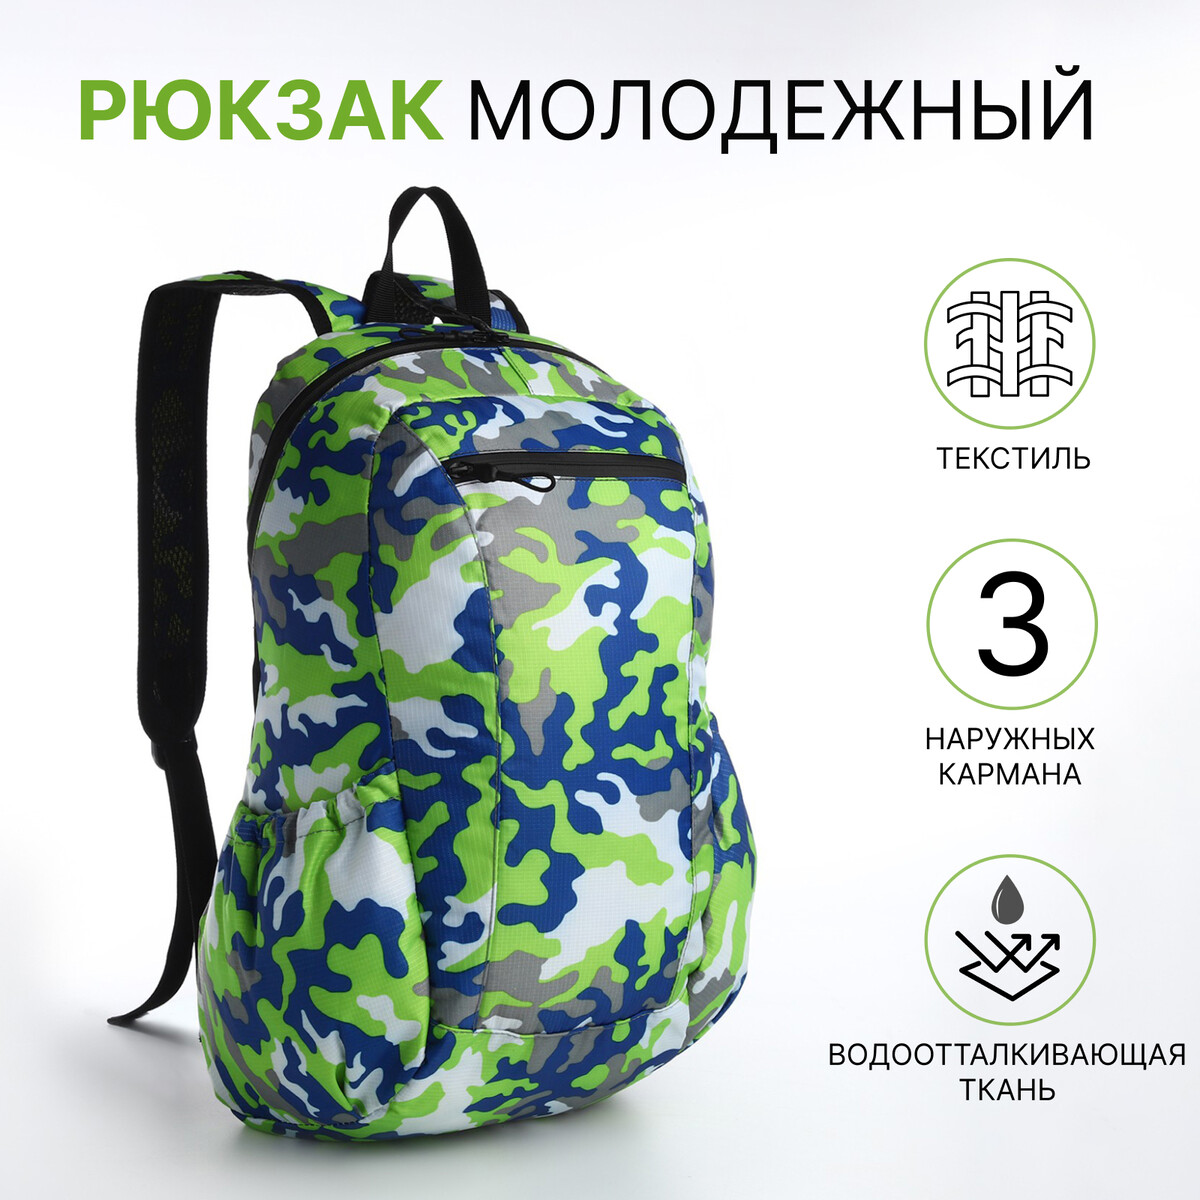 Рюкзак молодежный, водонепроницаемый на молнии, 3 кармана, цвет зеленый рюкзак молодежный водонепроницаемый на молнии 3 кармана зеленый